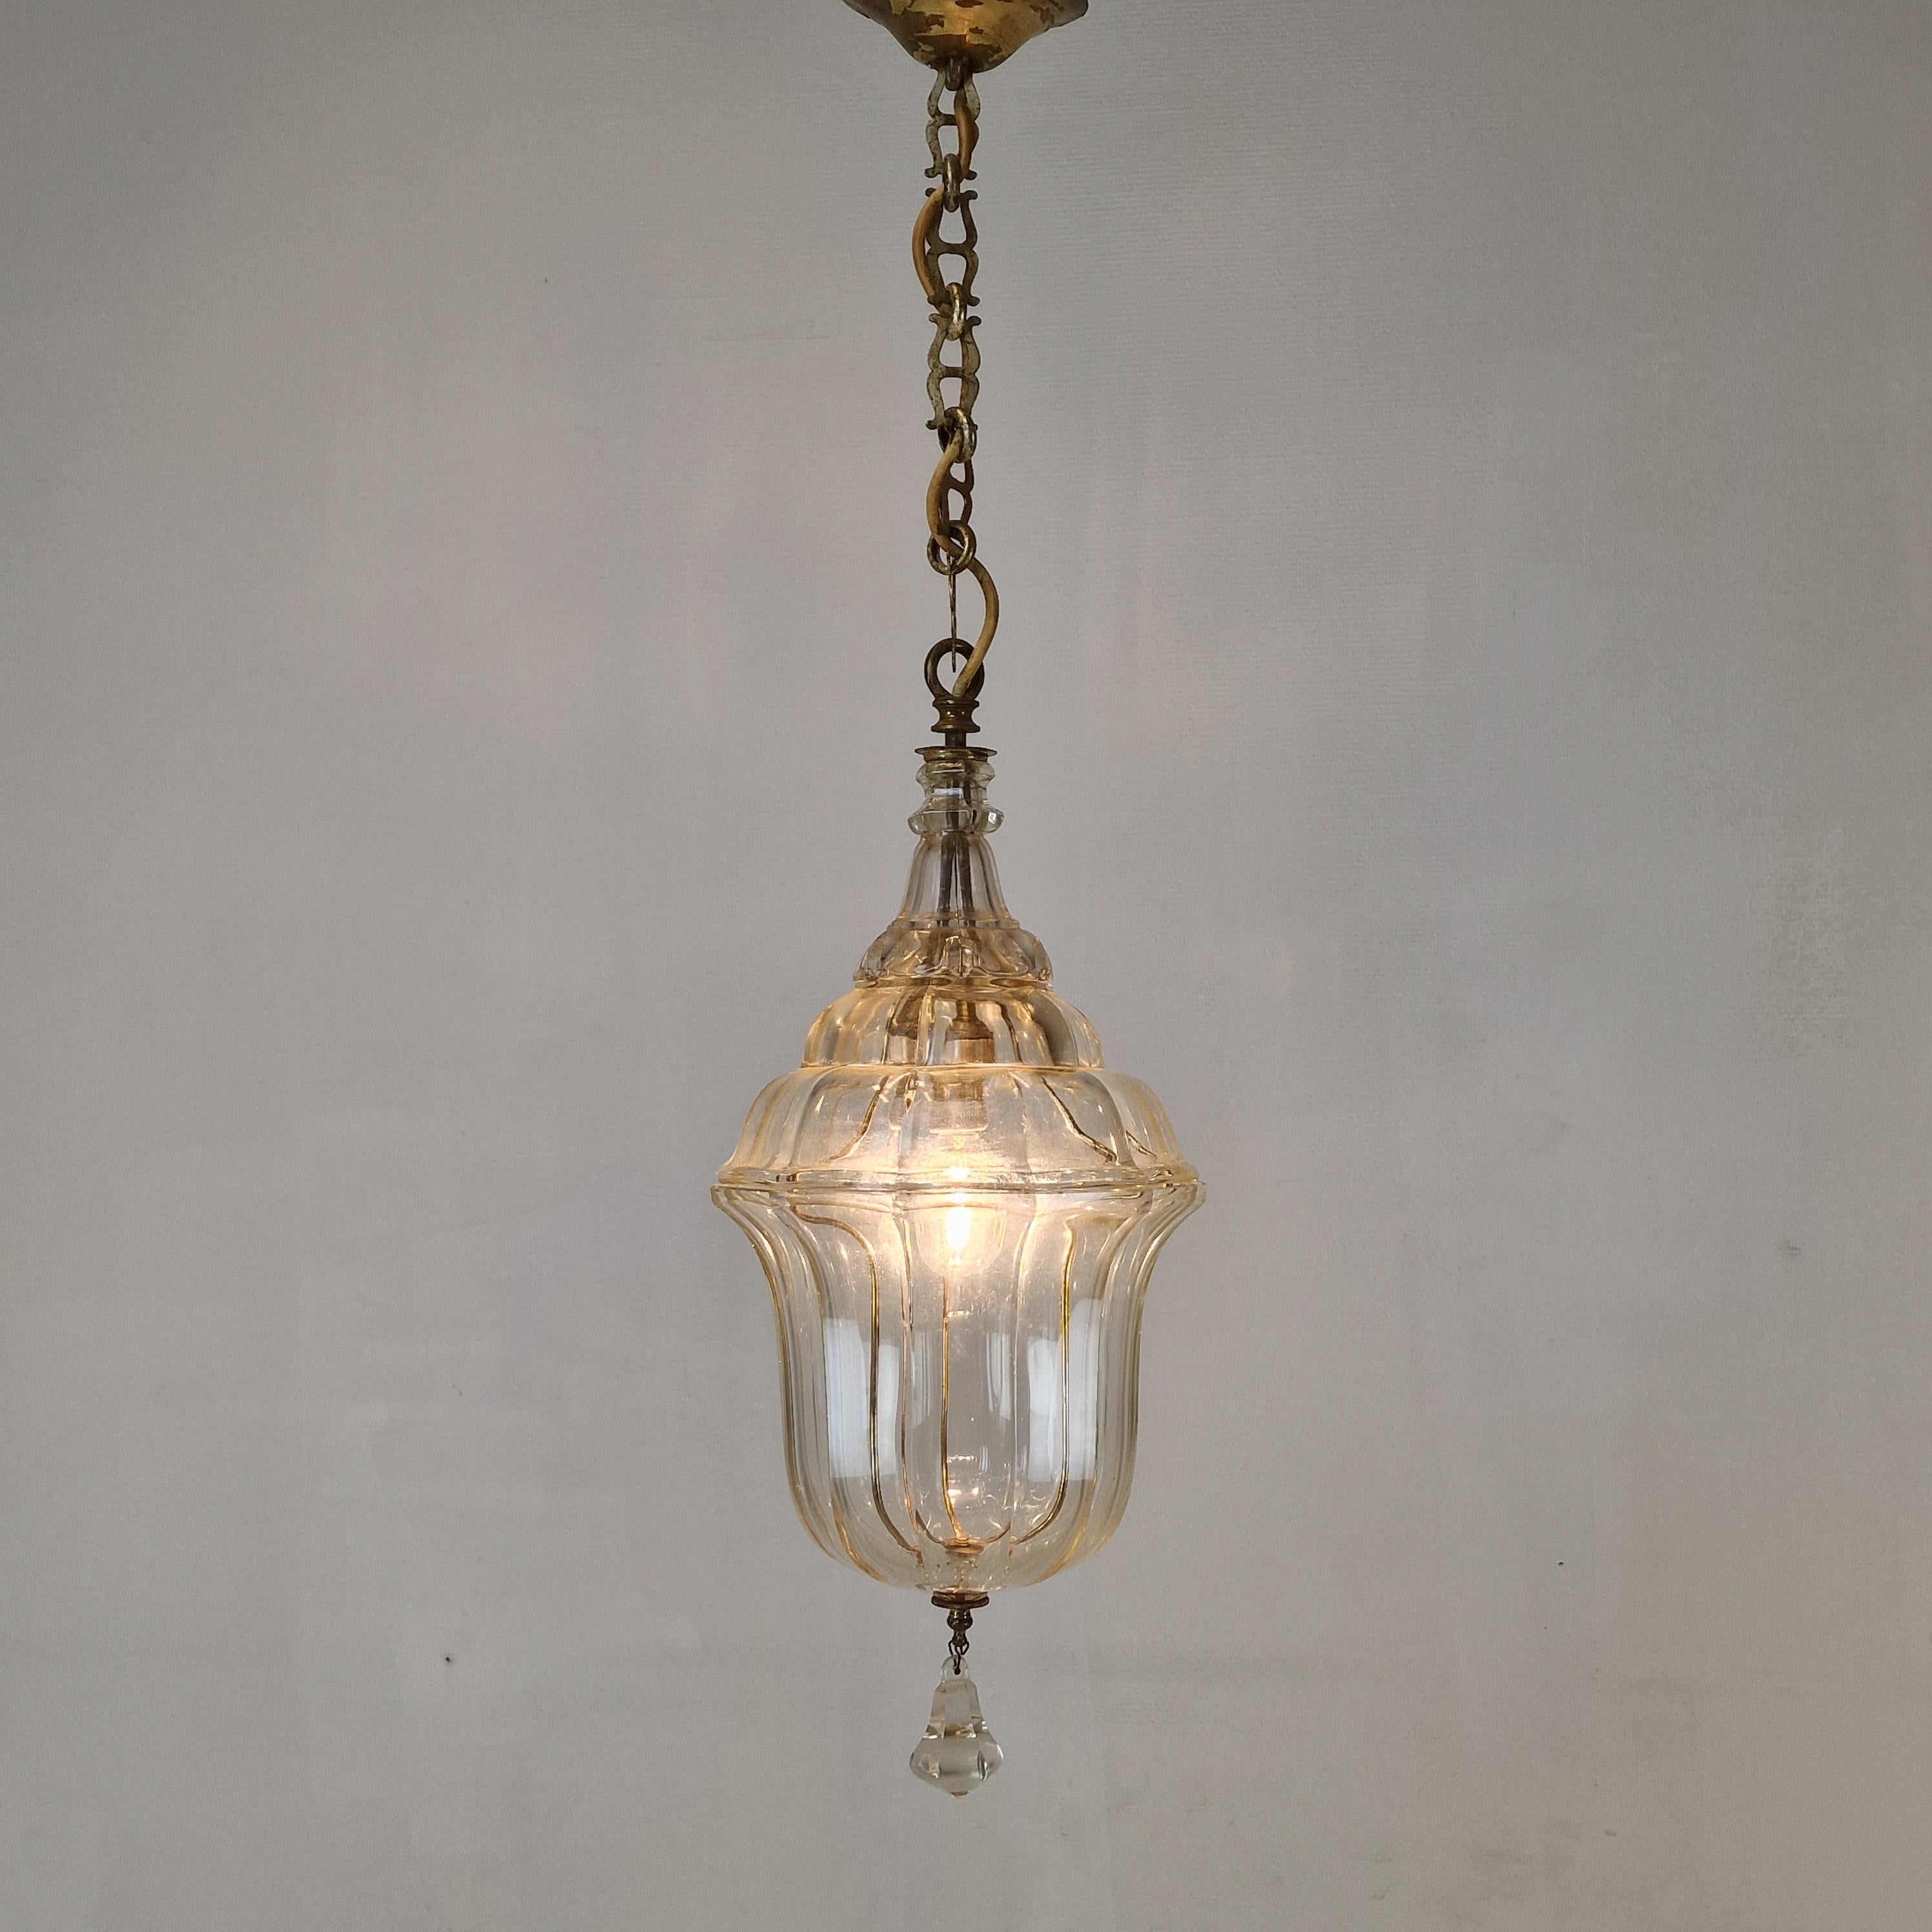 Très charmante lanterne fabriquée vers 1900 en Italie. 

Elle est fabriquée en verre de cristal taillé avec des détails en laiton.

La lampe est en très bon état, compte tenu de l'âge, juste les taches normales d'utilisation (voir les photos).

Le